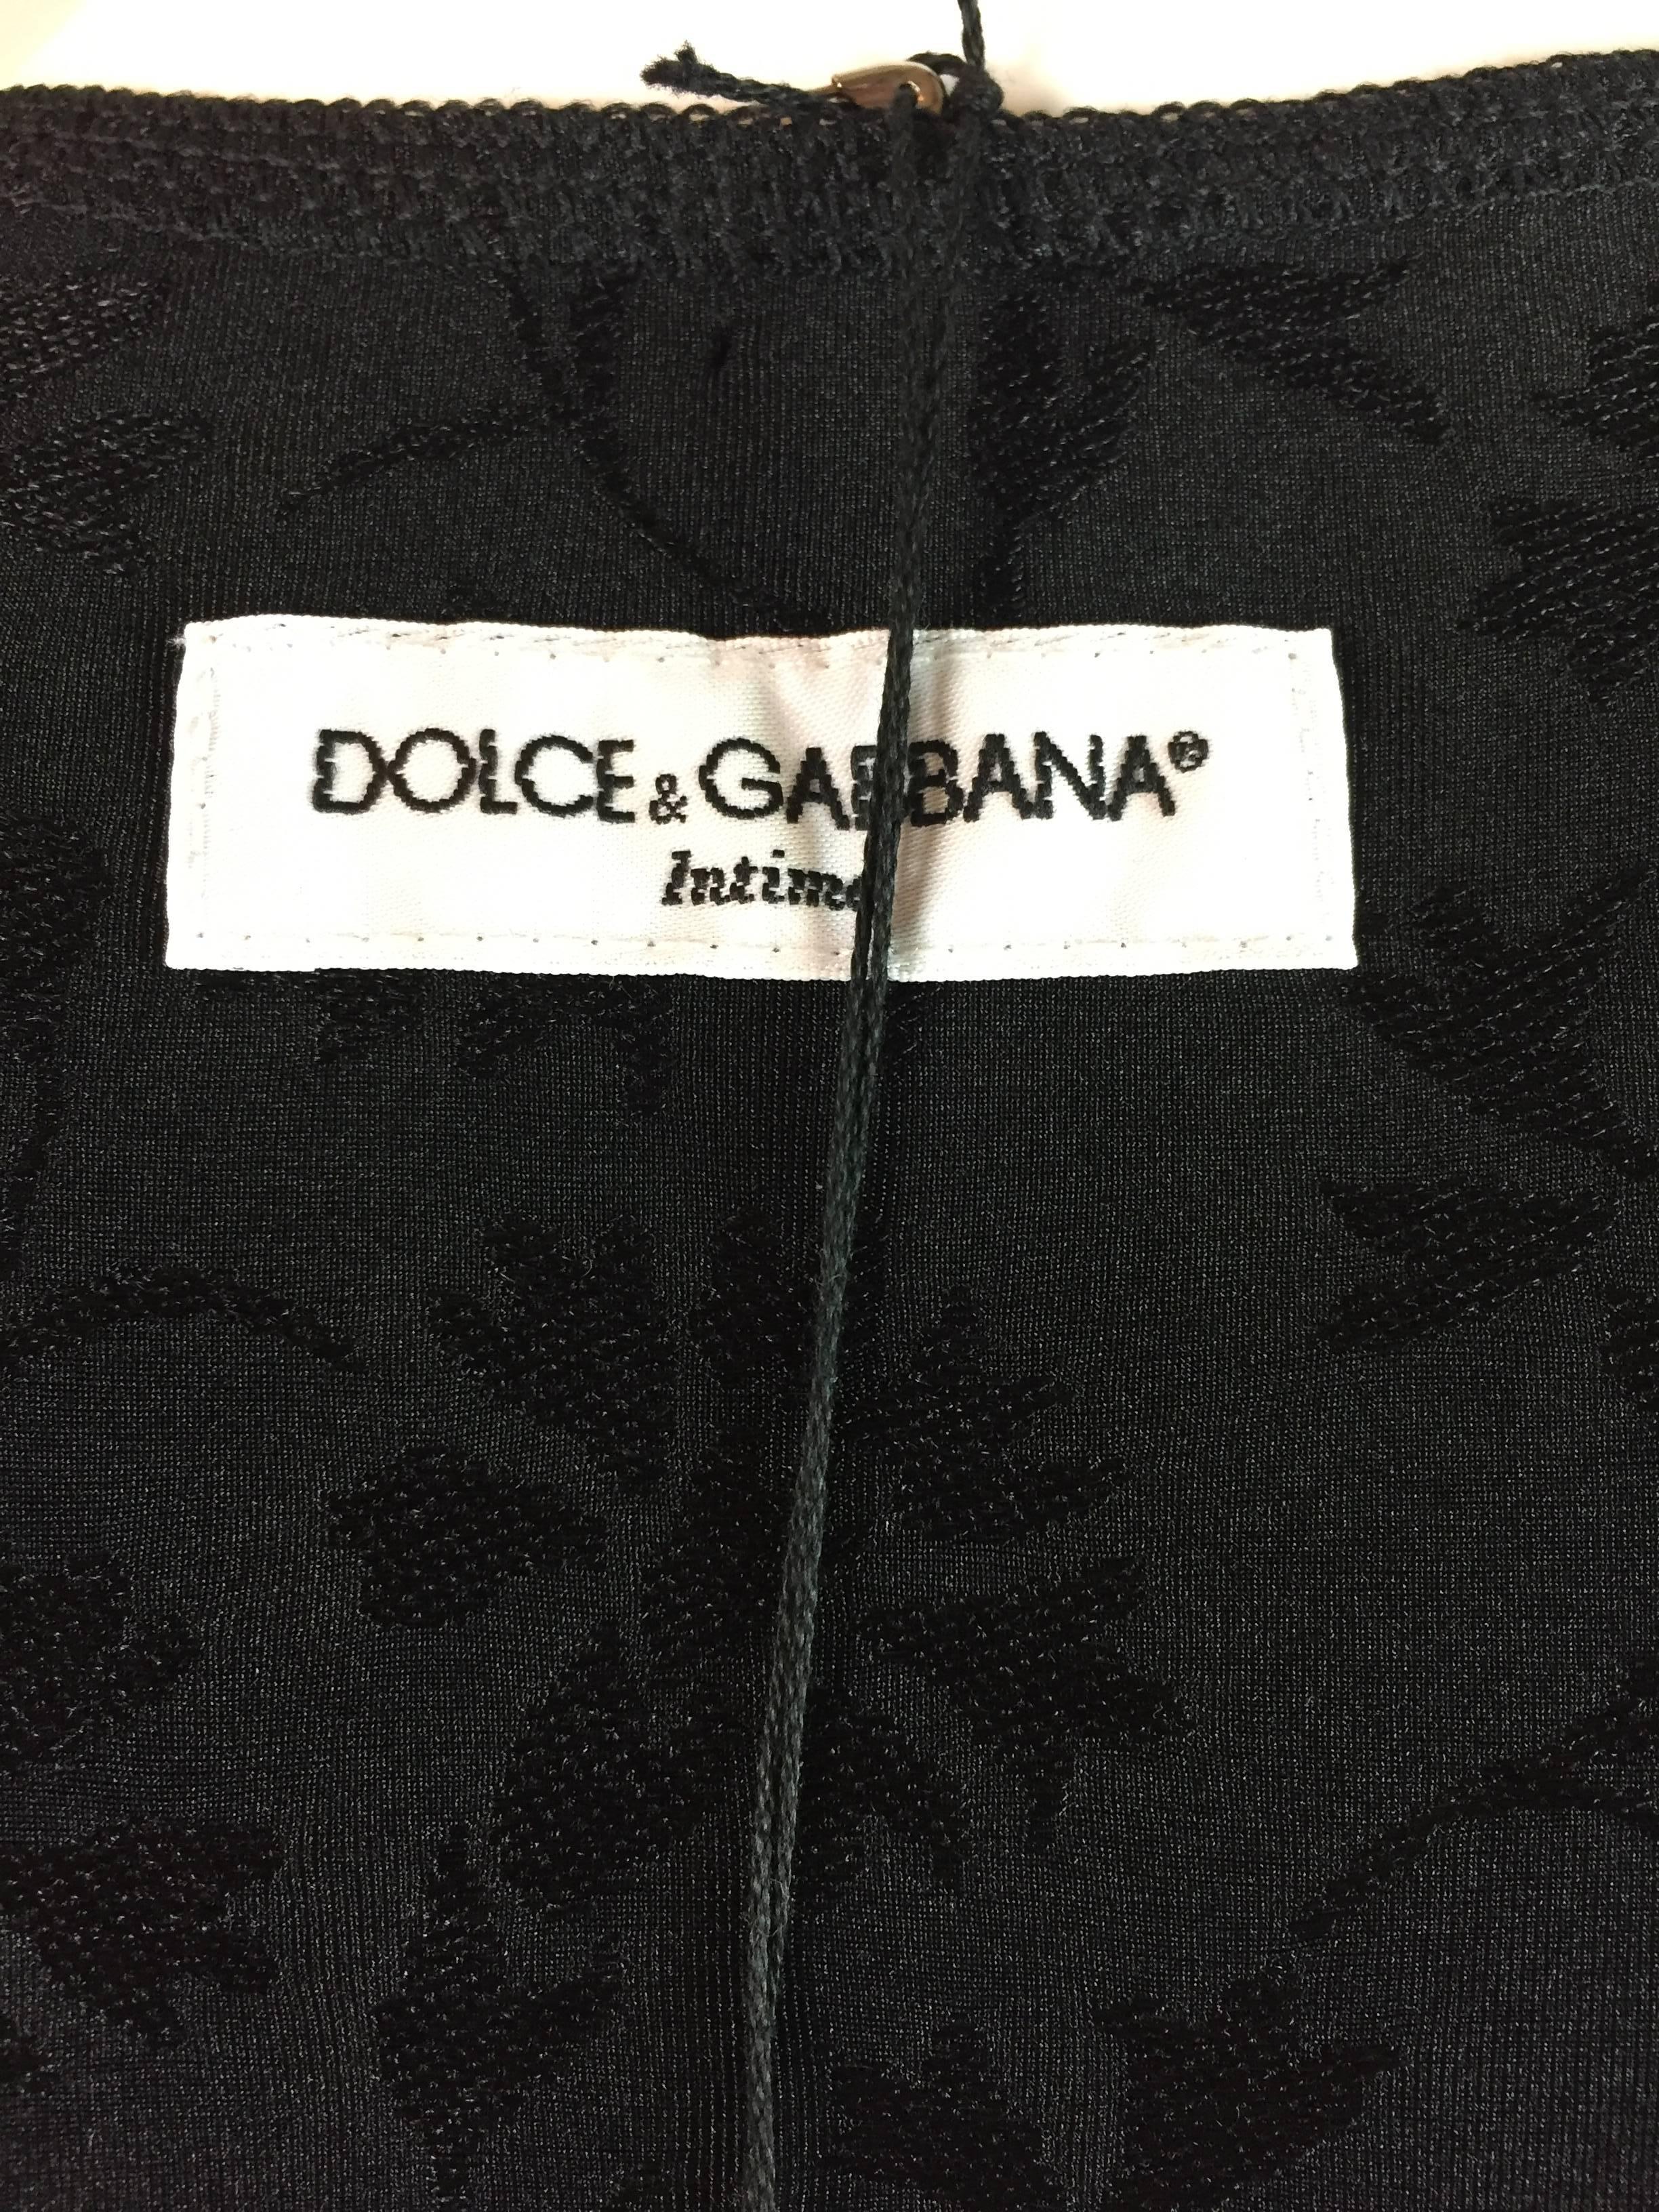 NWT 1990's Dolce & Gabbana Floral Brocade Black Crop Top & High Panties Set 1